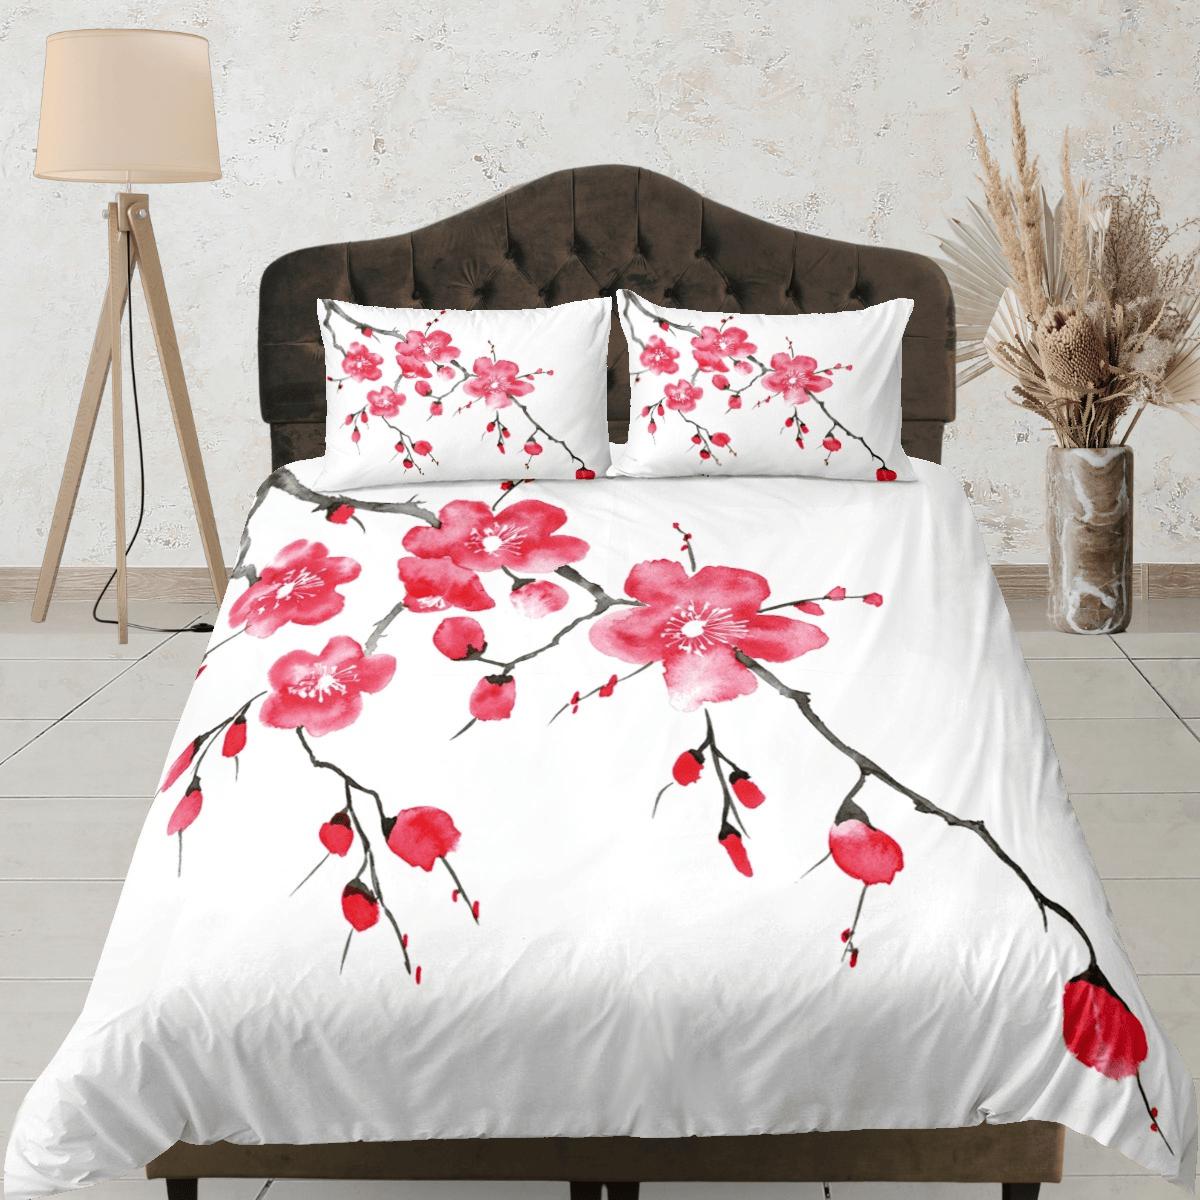 daintyduvet Red cherry blossom bedding floral prints white duvet cover queen, king, boho bedding designer bedspread full size bedding aesthetic